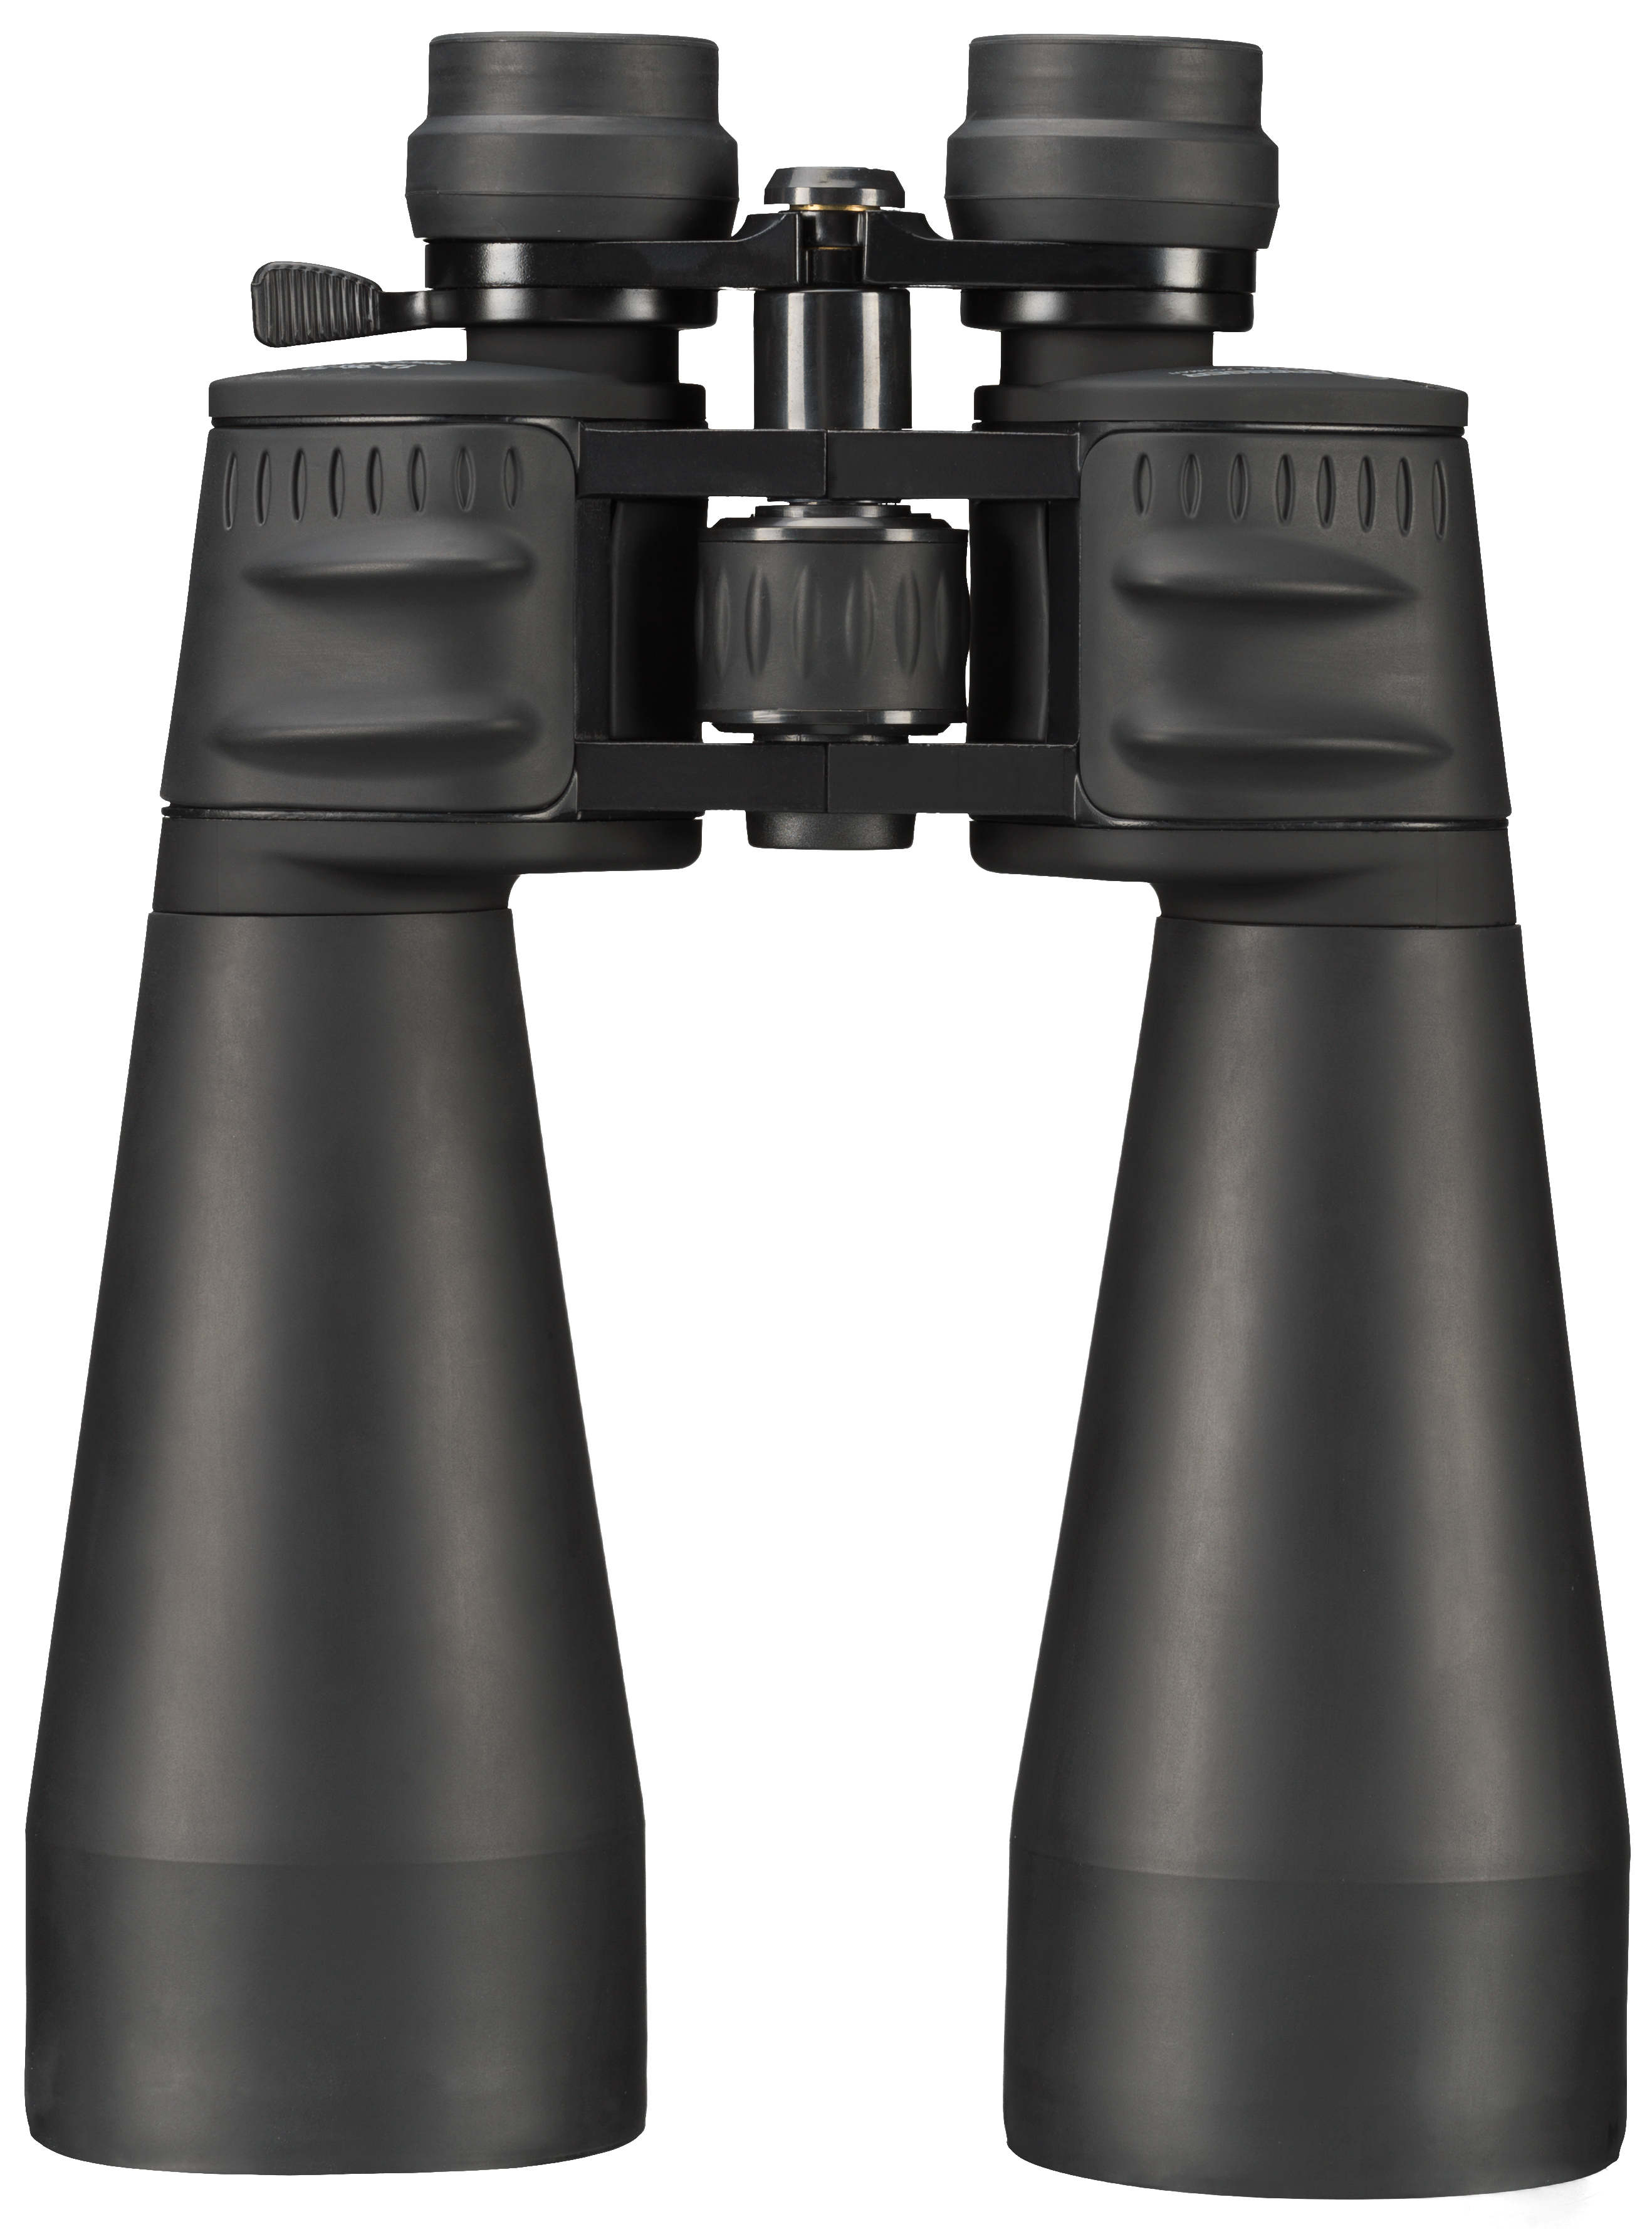 BRESSER Spezial Zoomar 12-36x70 Zoom Binoculars